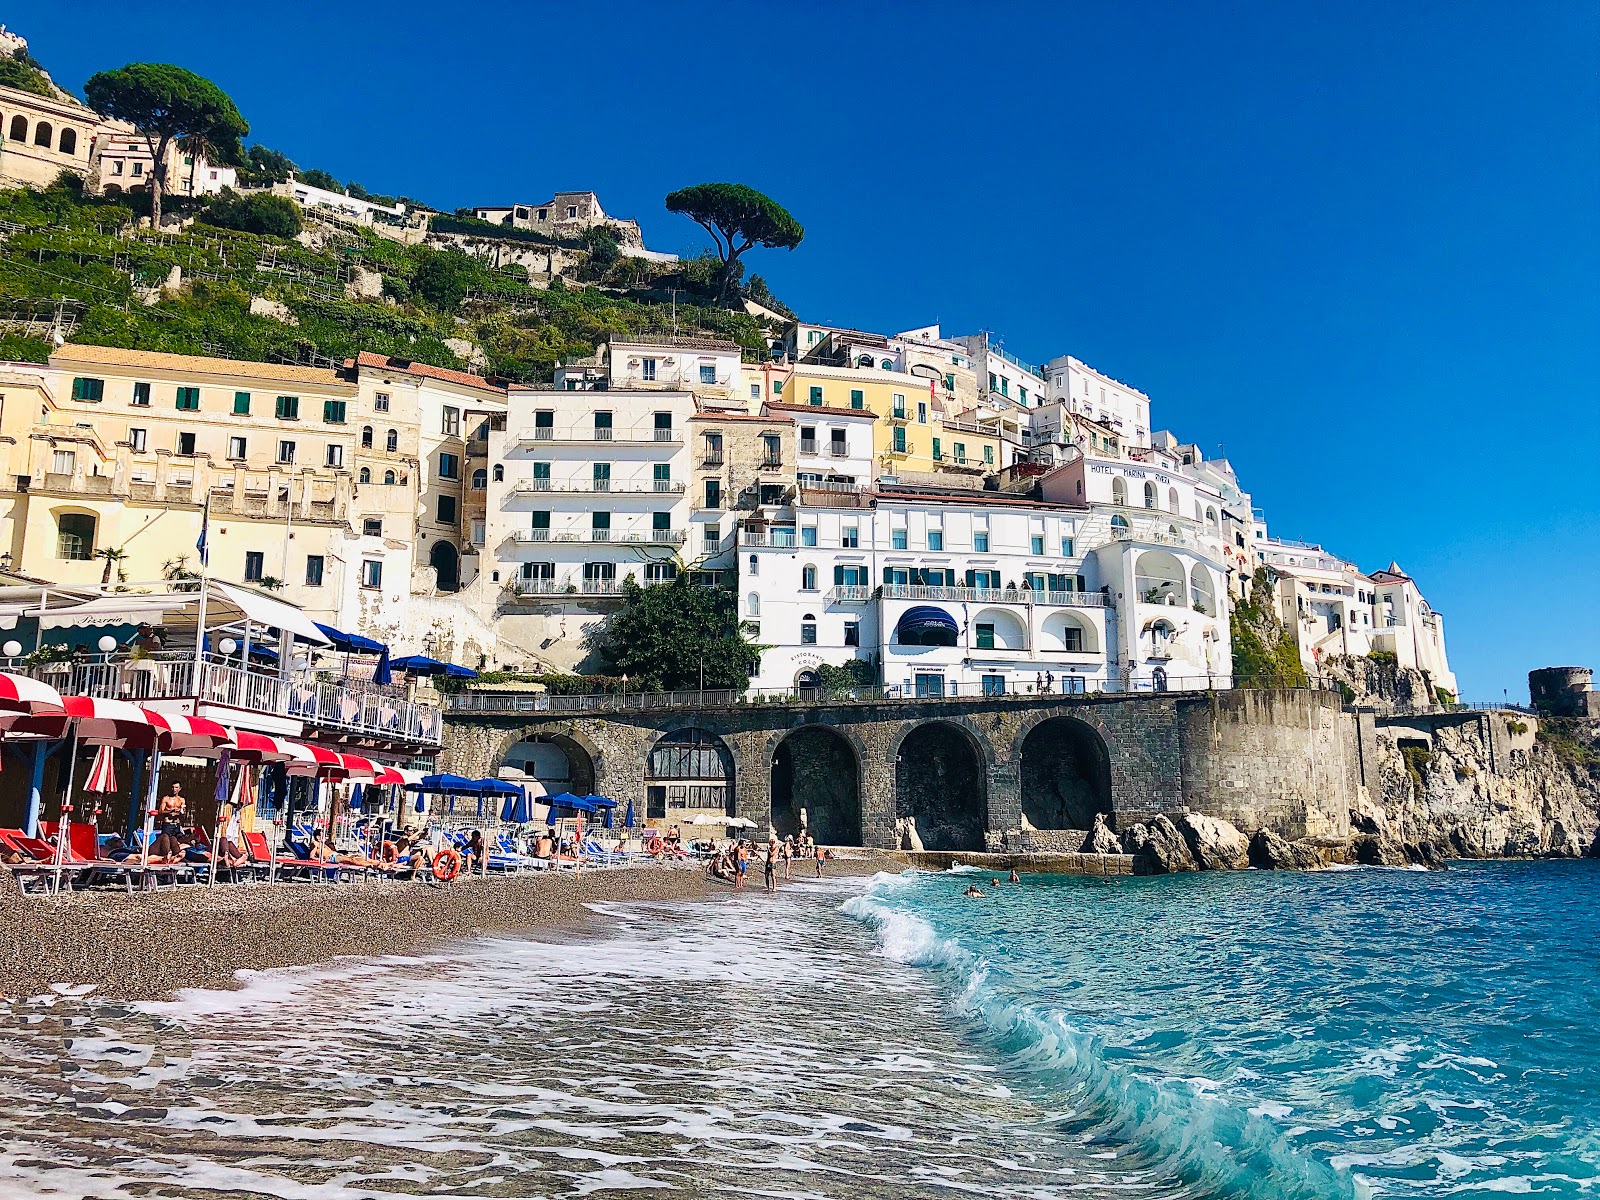 Amalfi beach'in fotoğrafı küçük koy ile birlikte